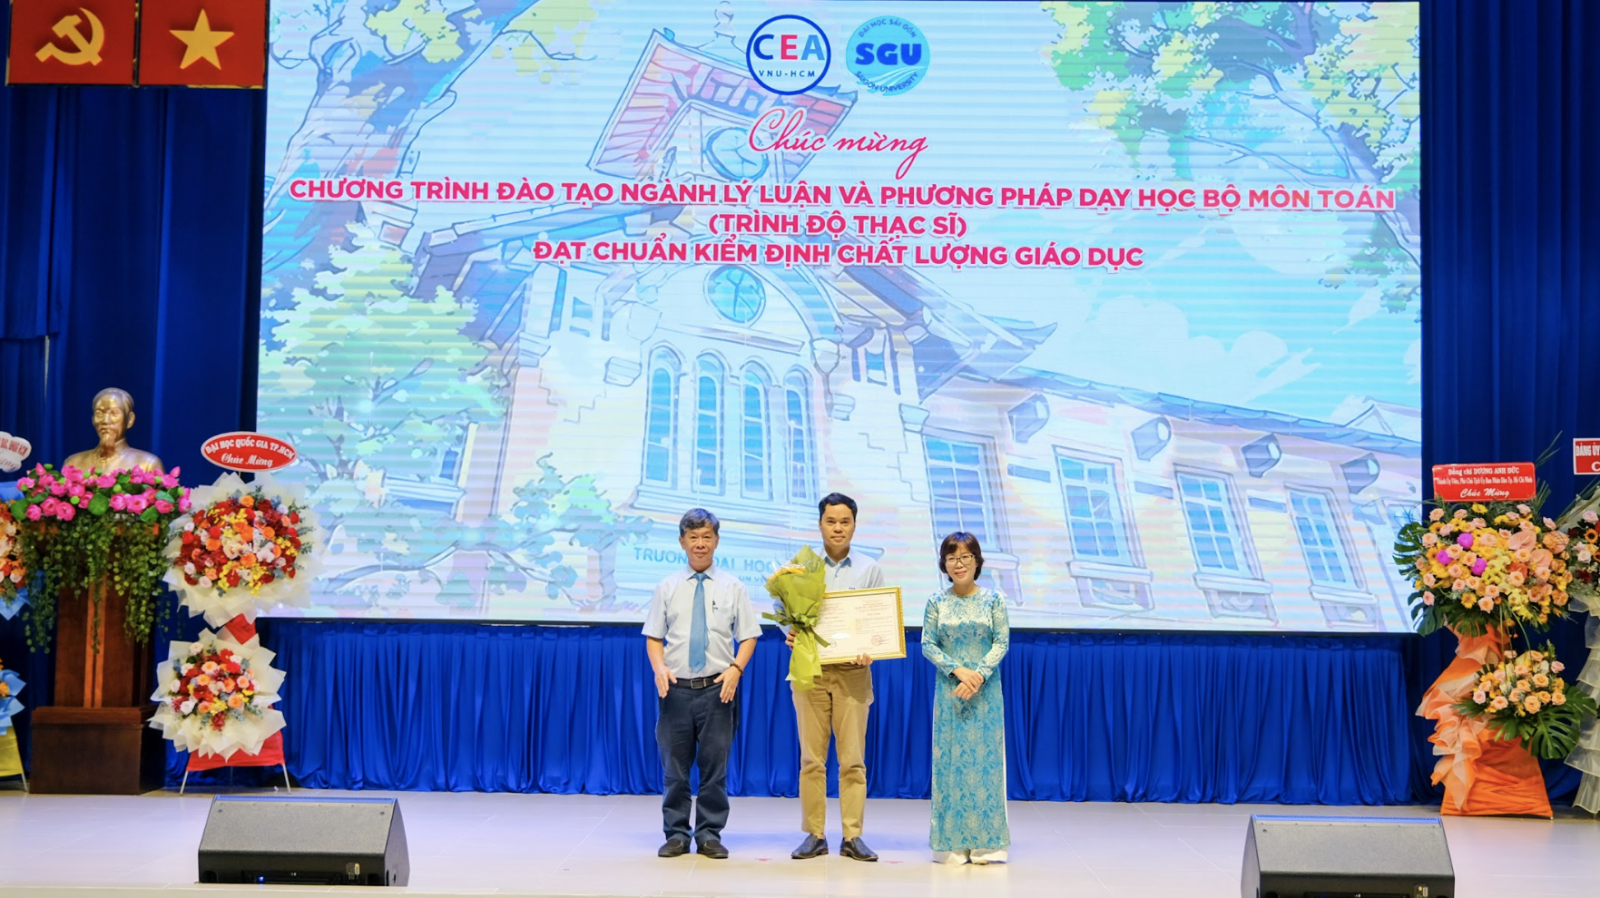 Trao chứng nhận kiểm định chất lượng giáo dục cho Trường ĐH Sài Gòn